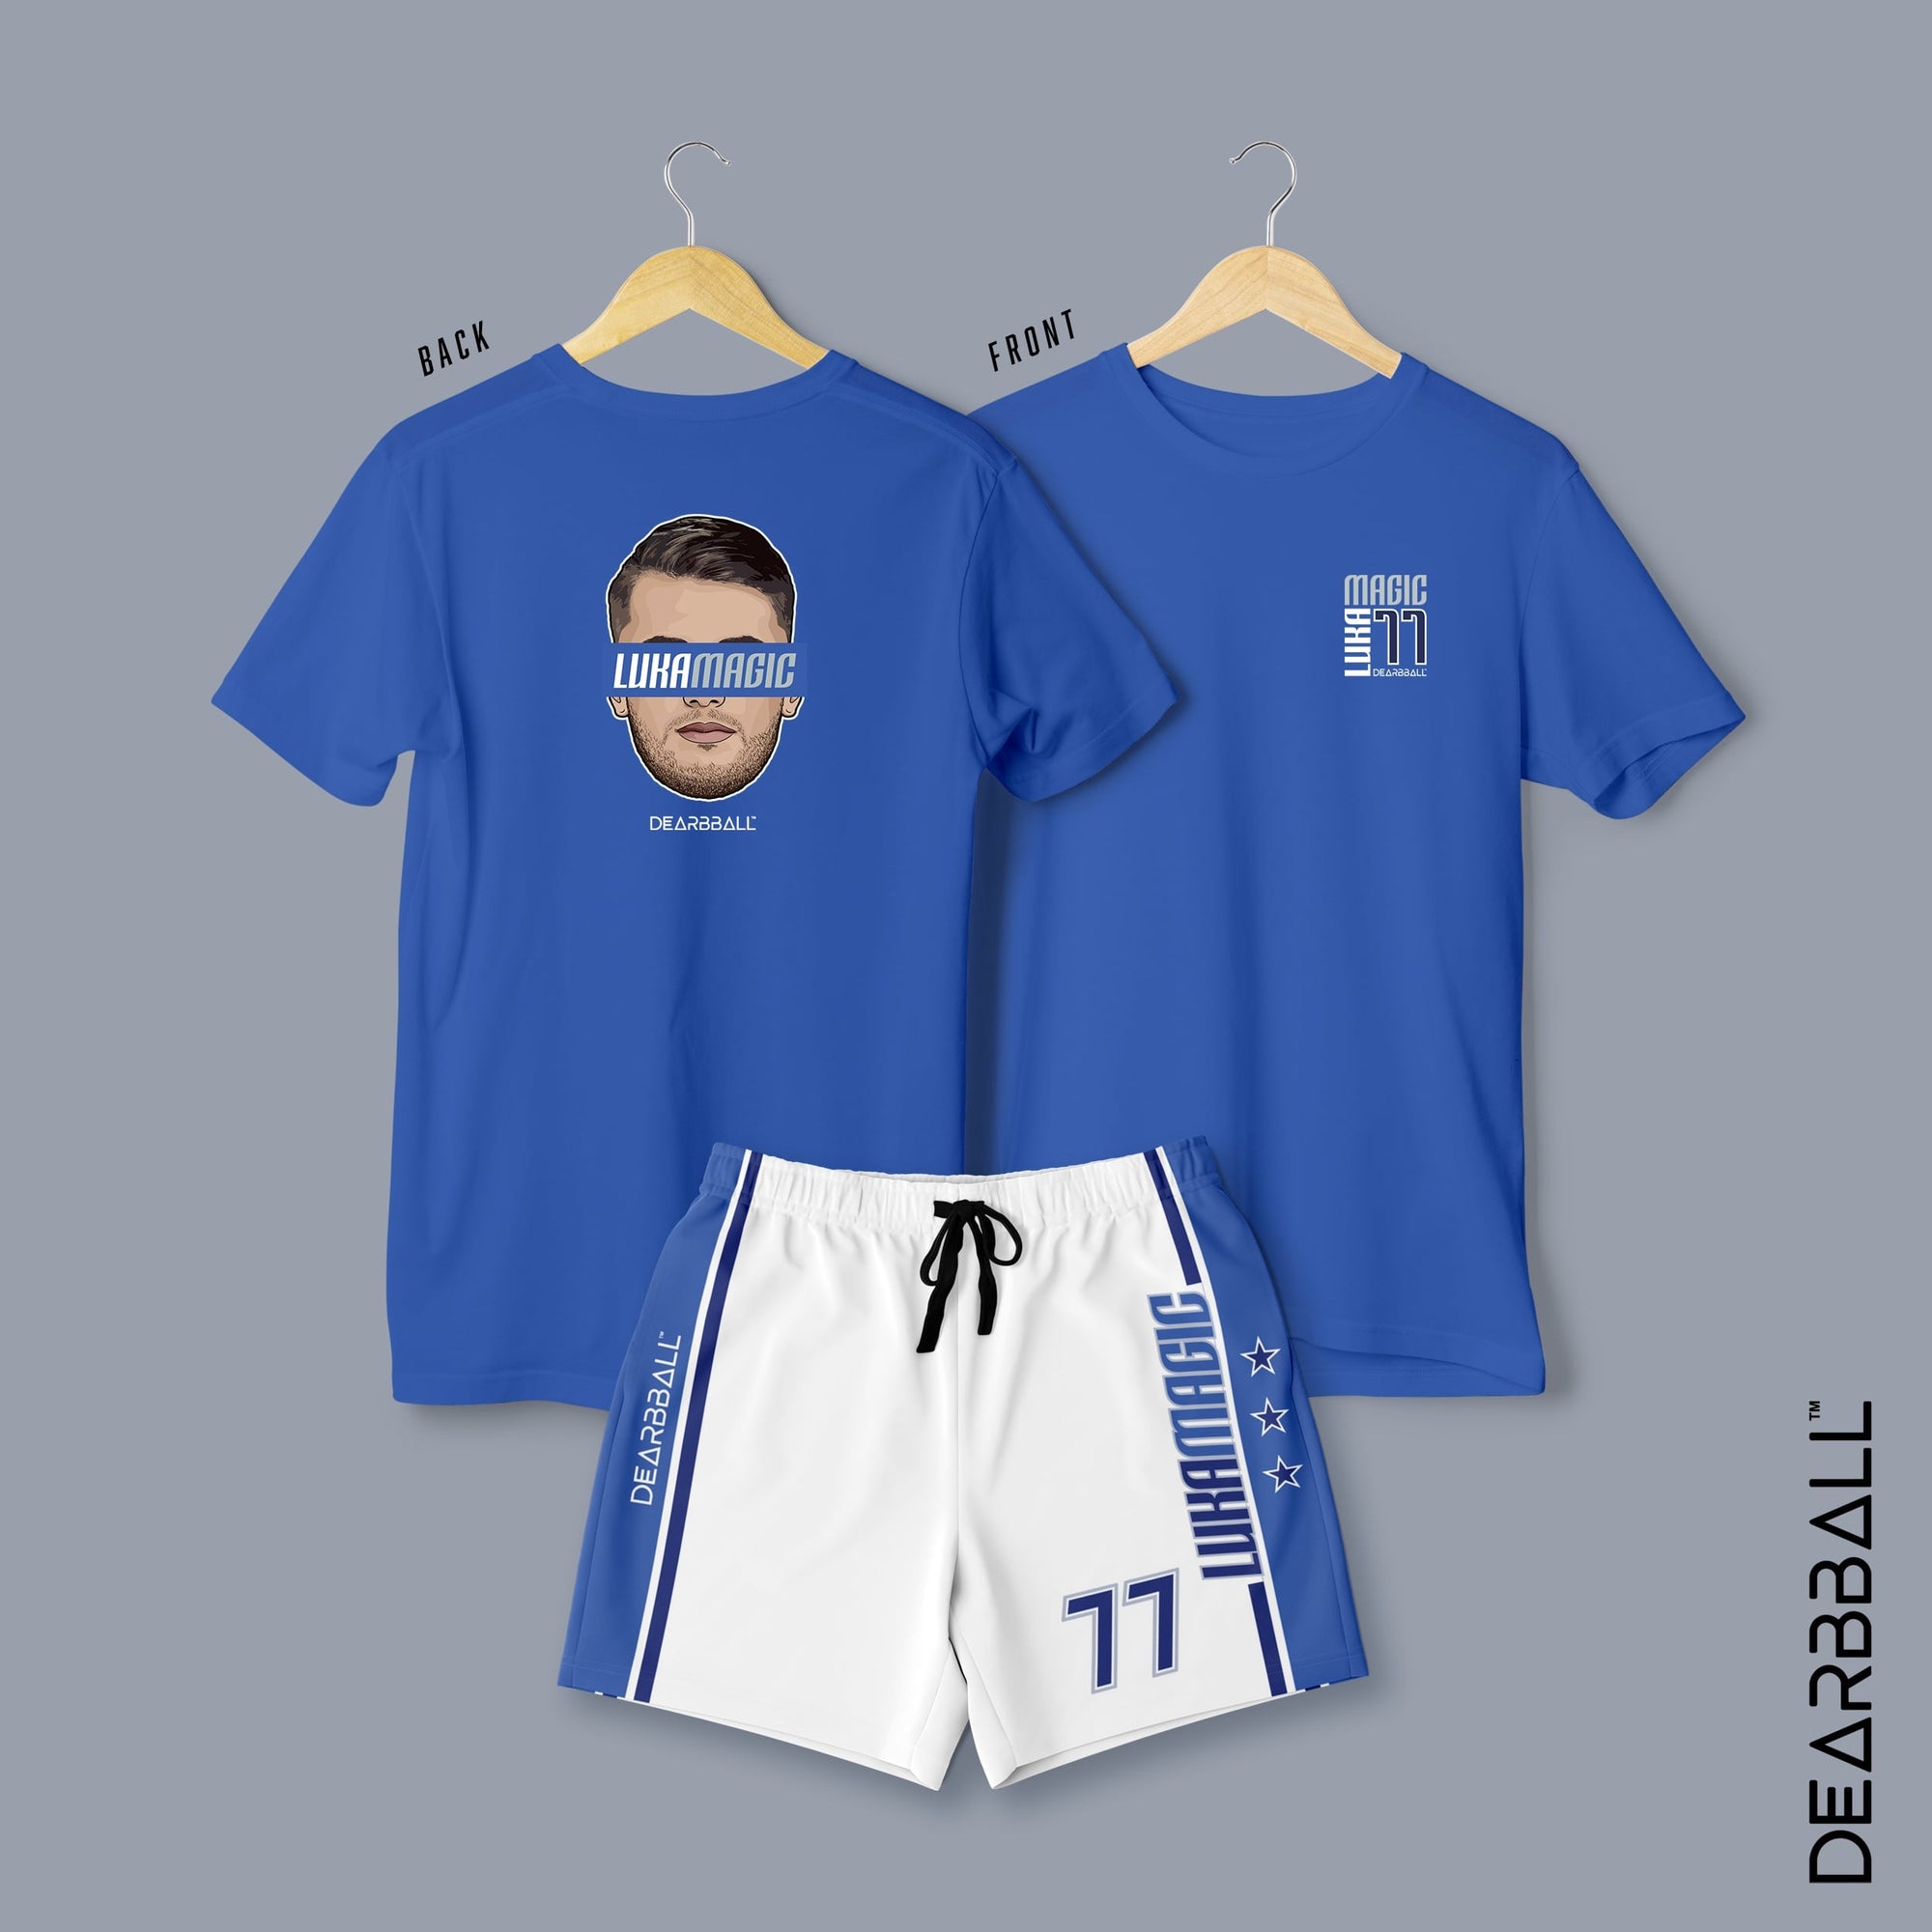 DearBBall Short T-Shirt Set - LukaMagic Finals Premium Edition